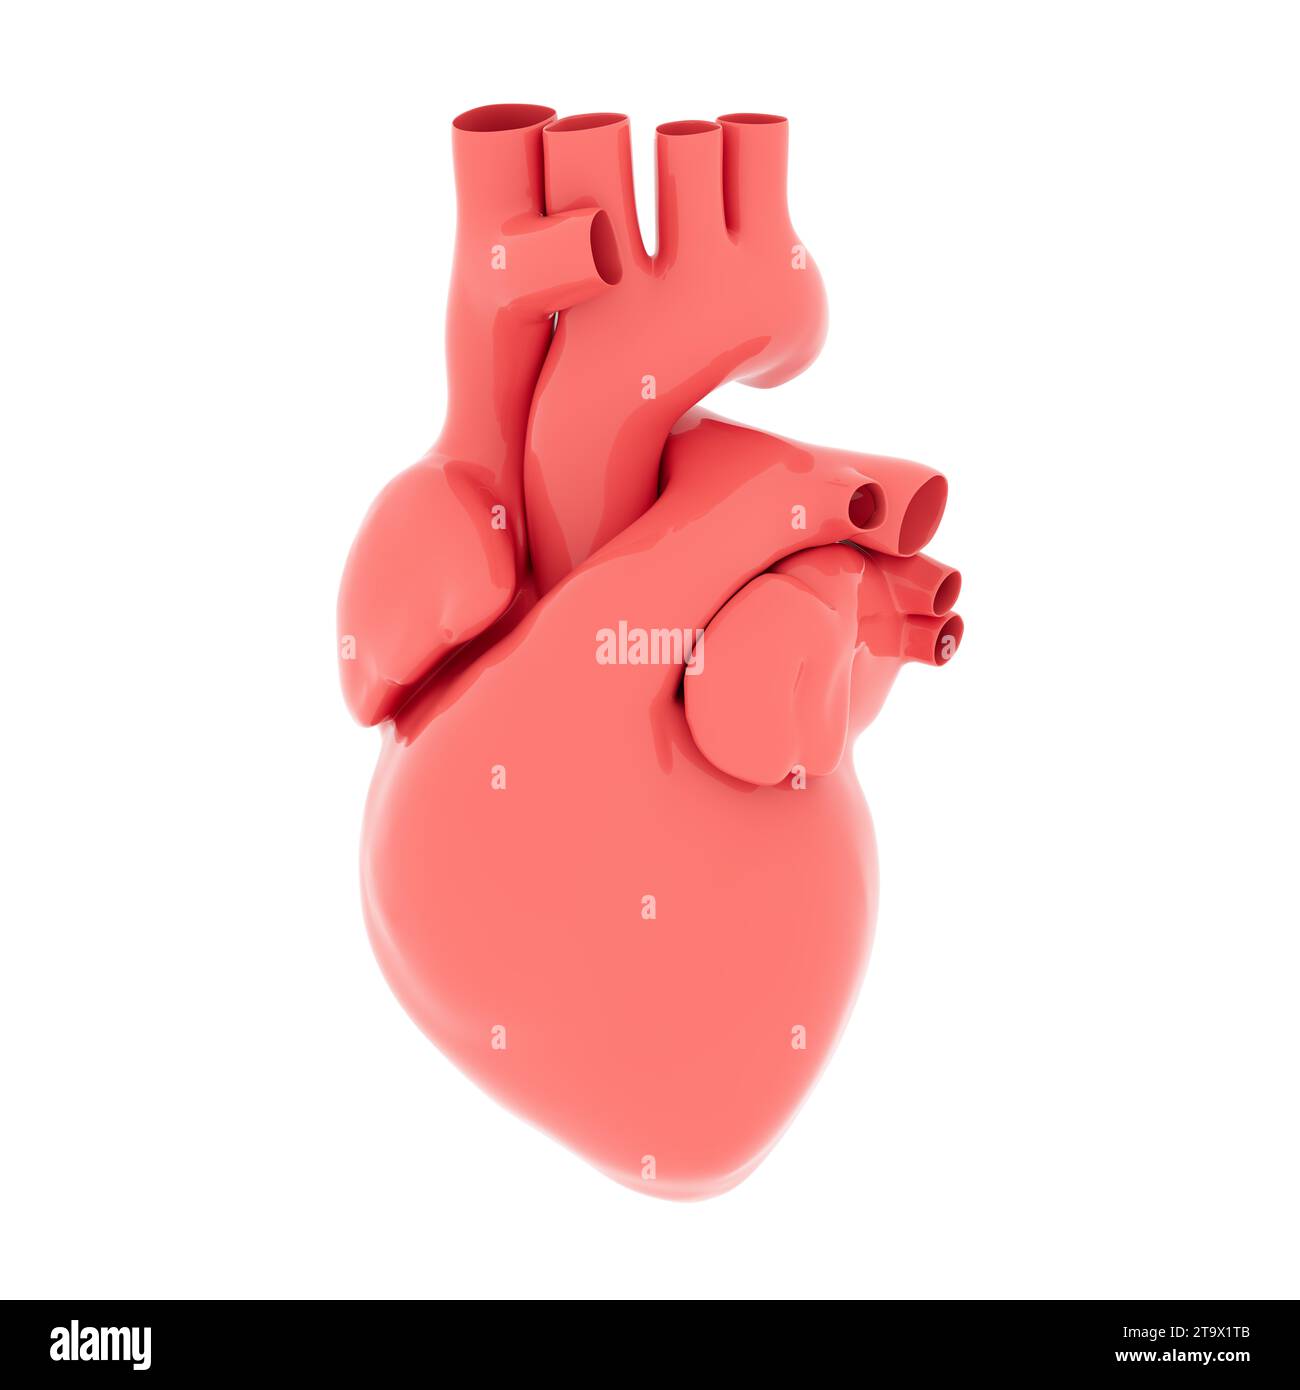 Cœur humain rouge anatomique sur fond blanc. Illustration de rendu 3D. Banque D'Images